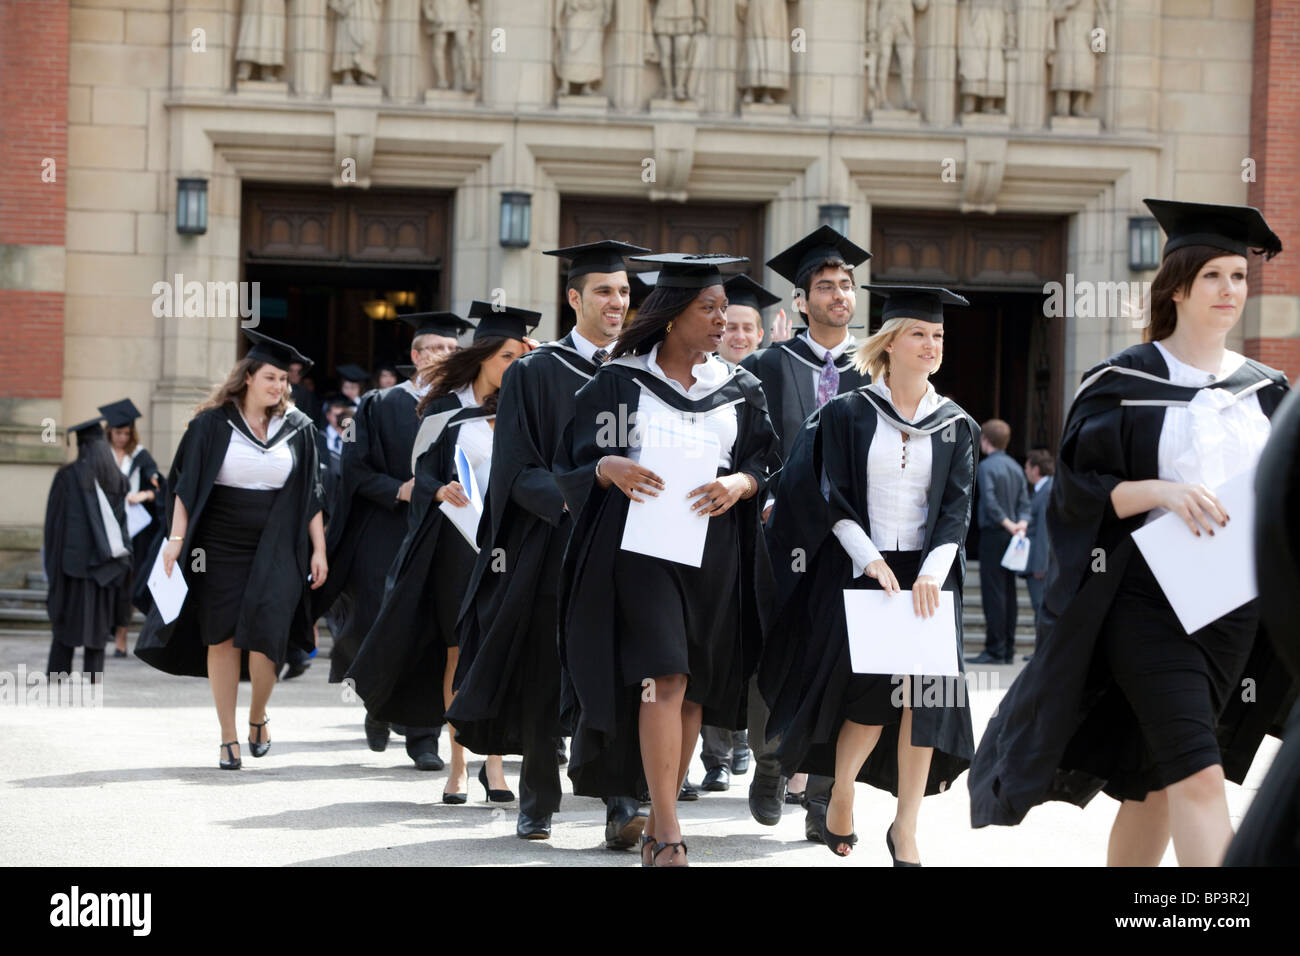 Diplômés quittent la grande salle après un diplôme à l'Université de Birmingham, UK cérémonie Banque D'Images